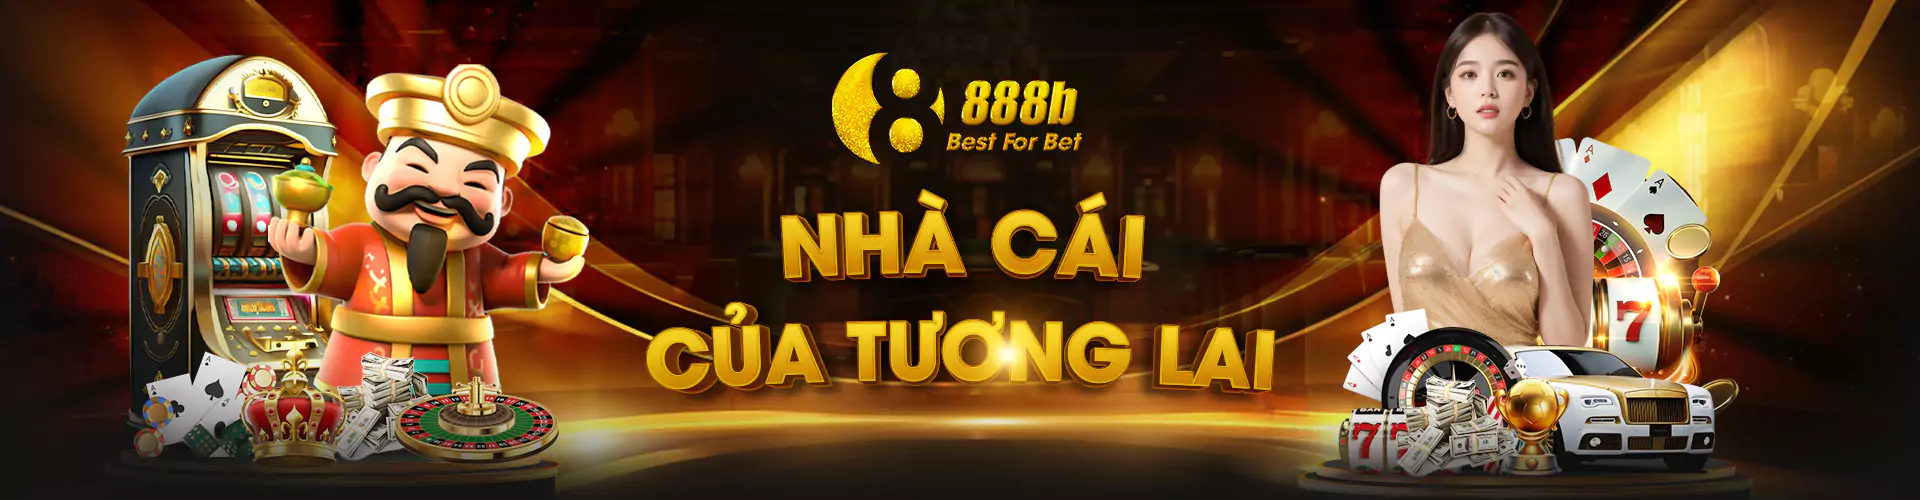 888b casino online